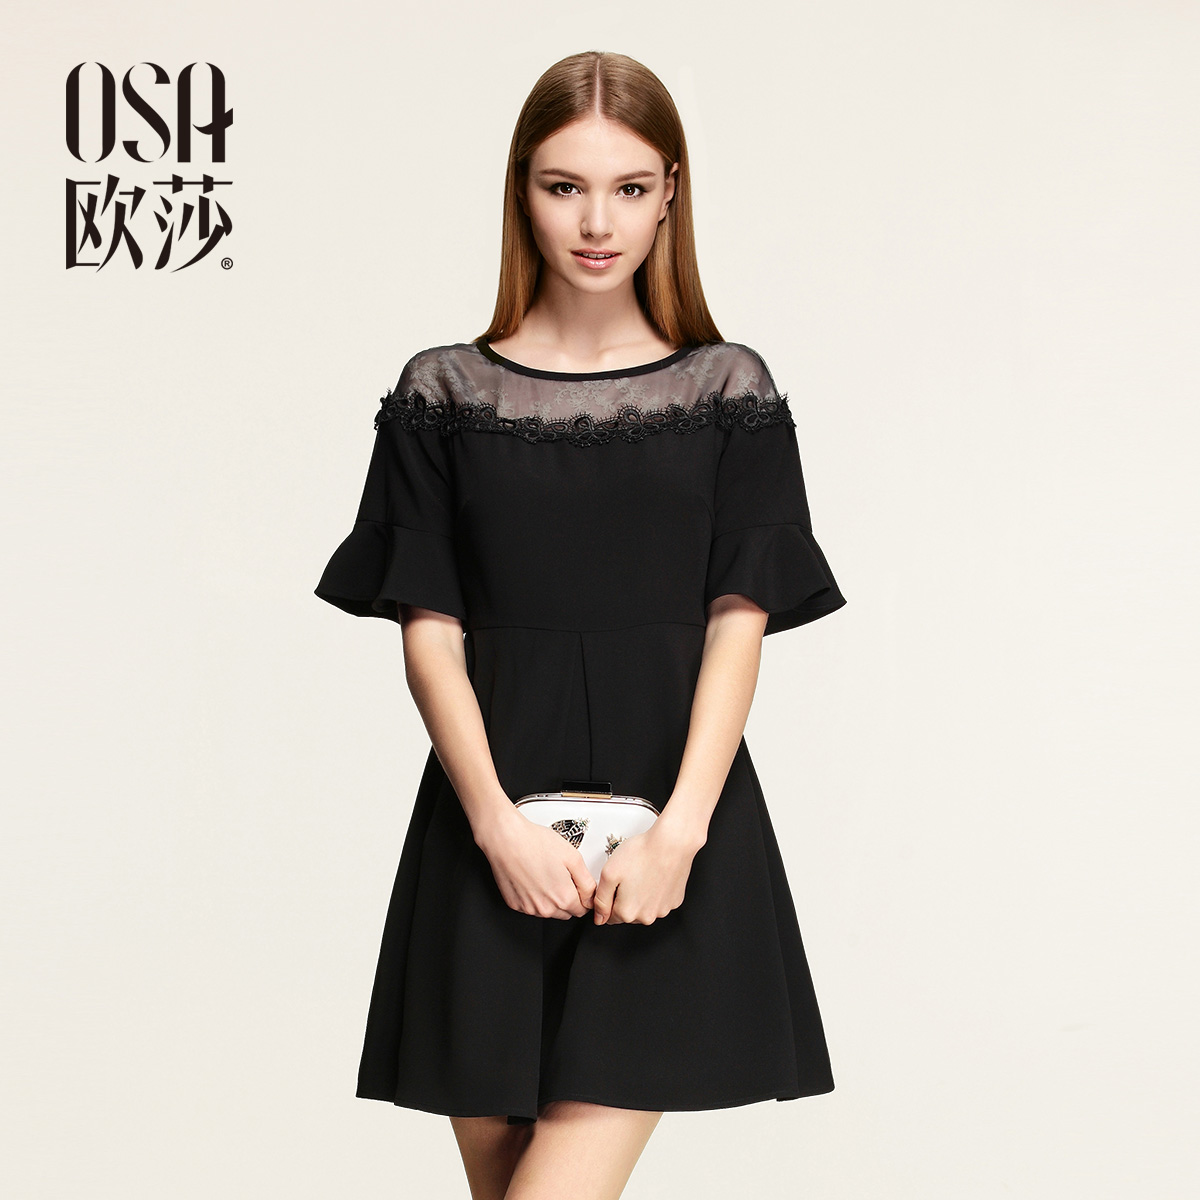 Женское платье OSA sl507044 2015